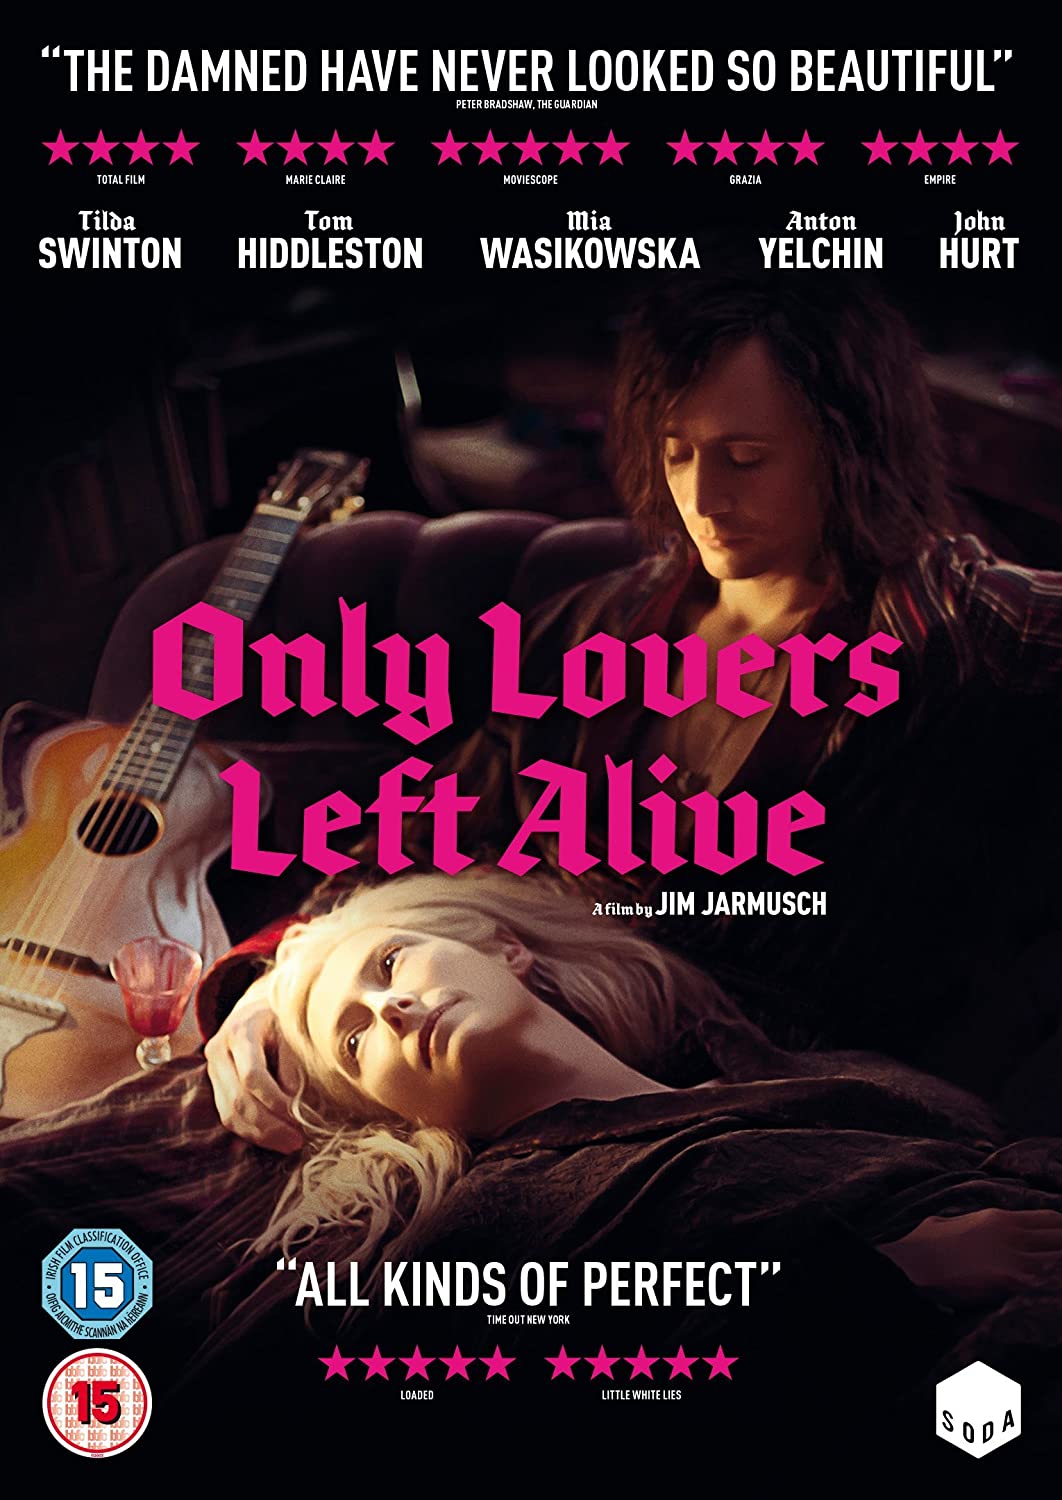 Only Lovers Left Alive [2014] - Romance/Horror [DVD]